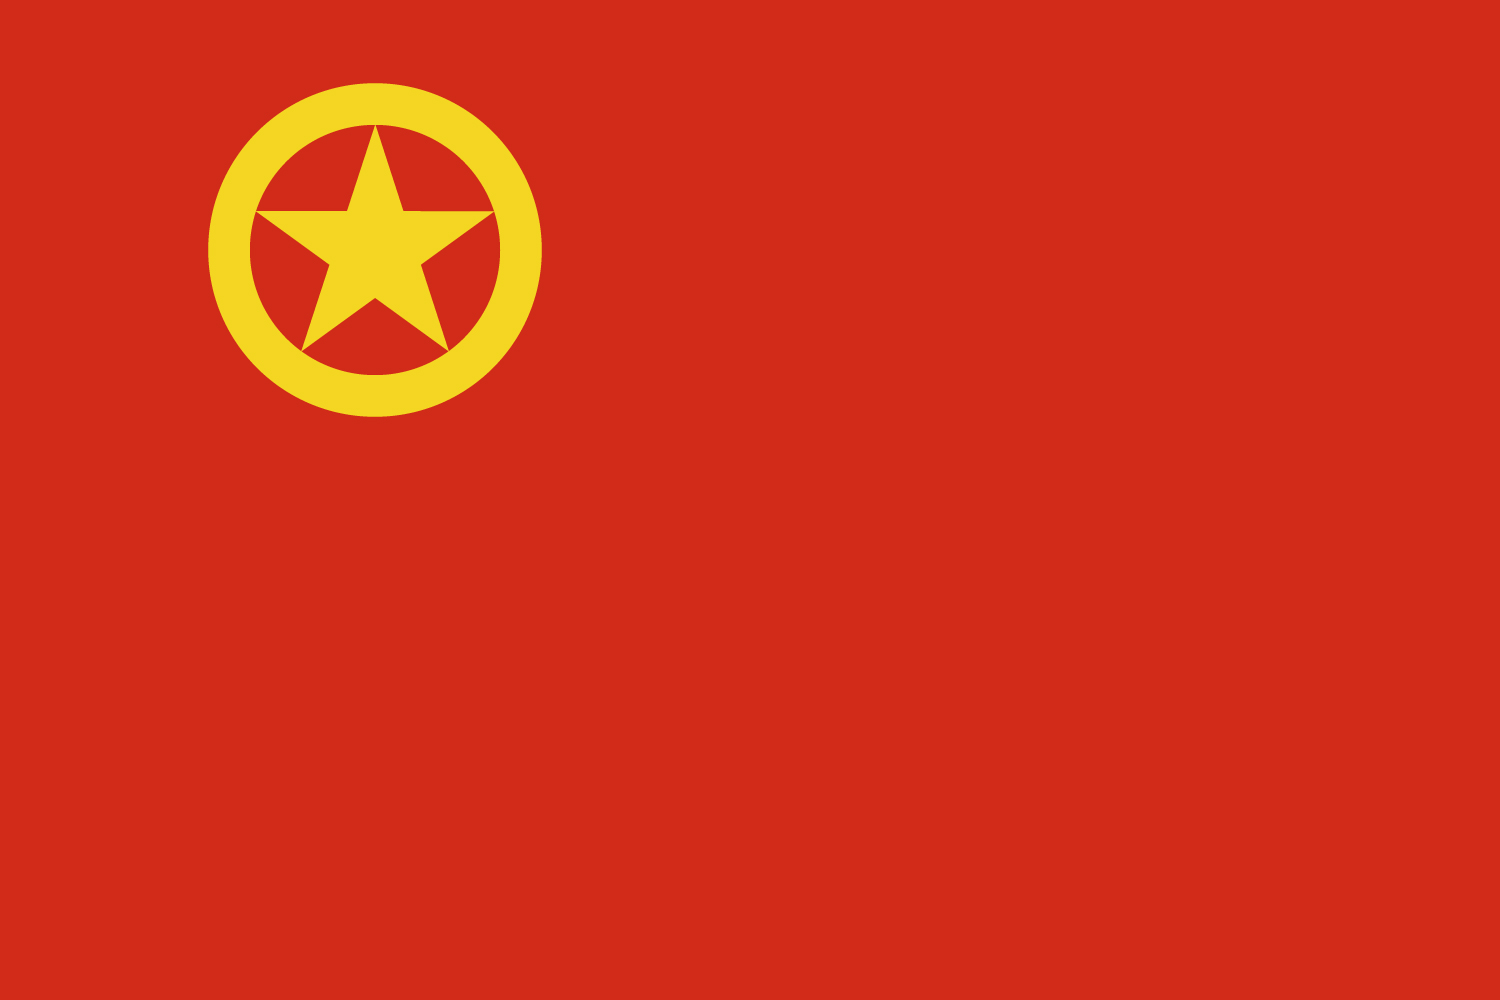 中國共產主義青年團(中國社會主義青年團)